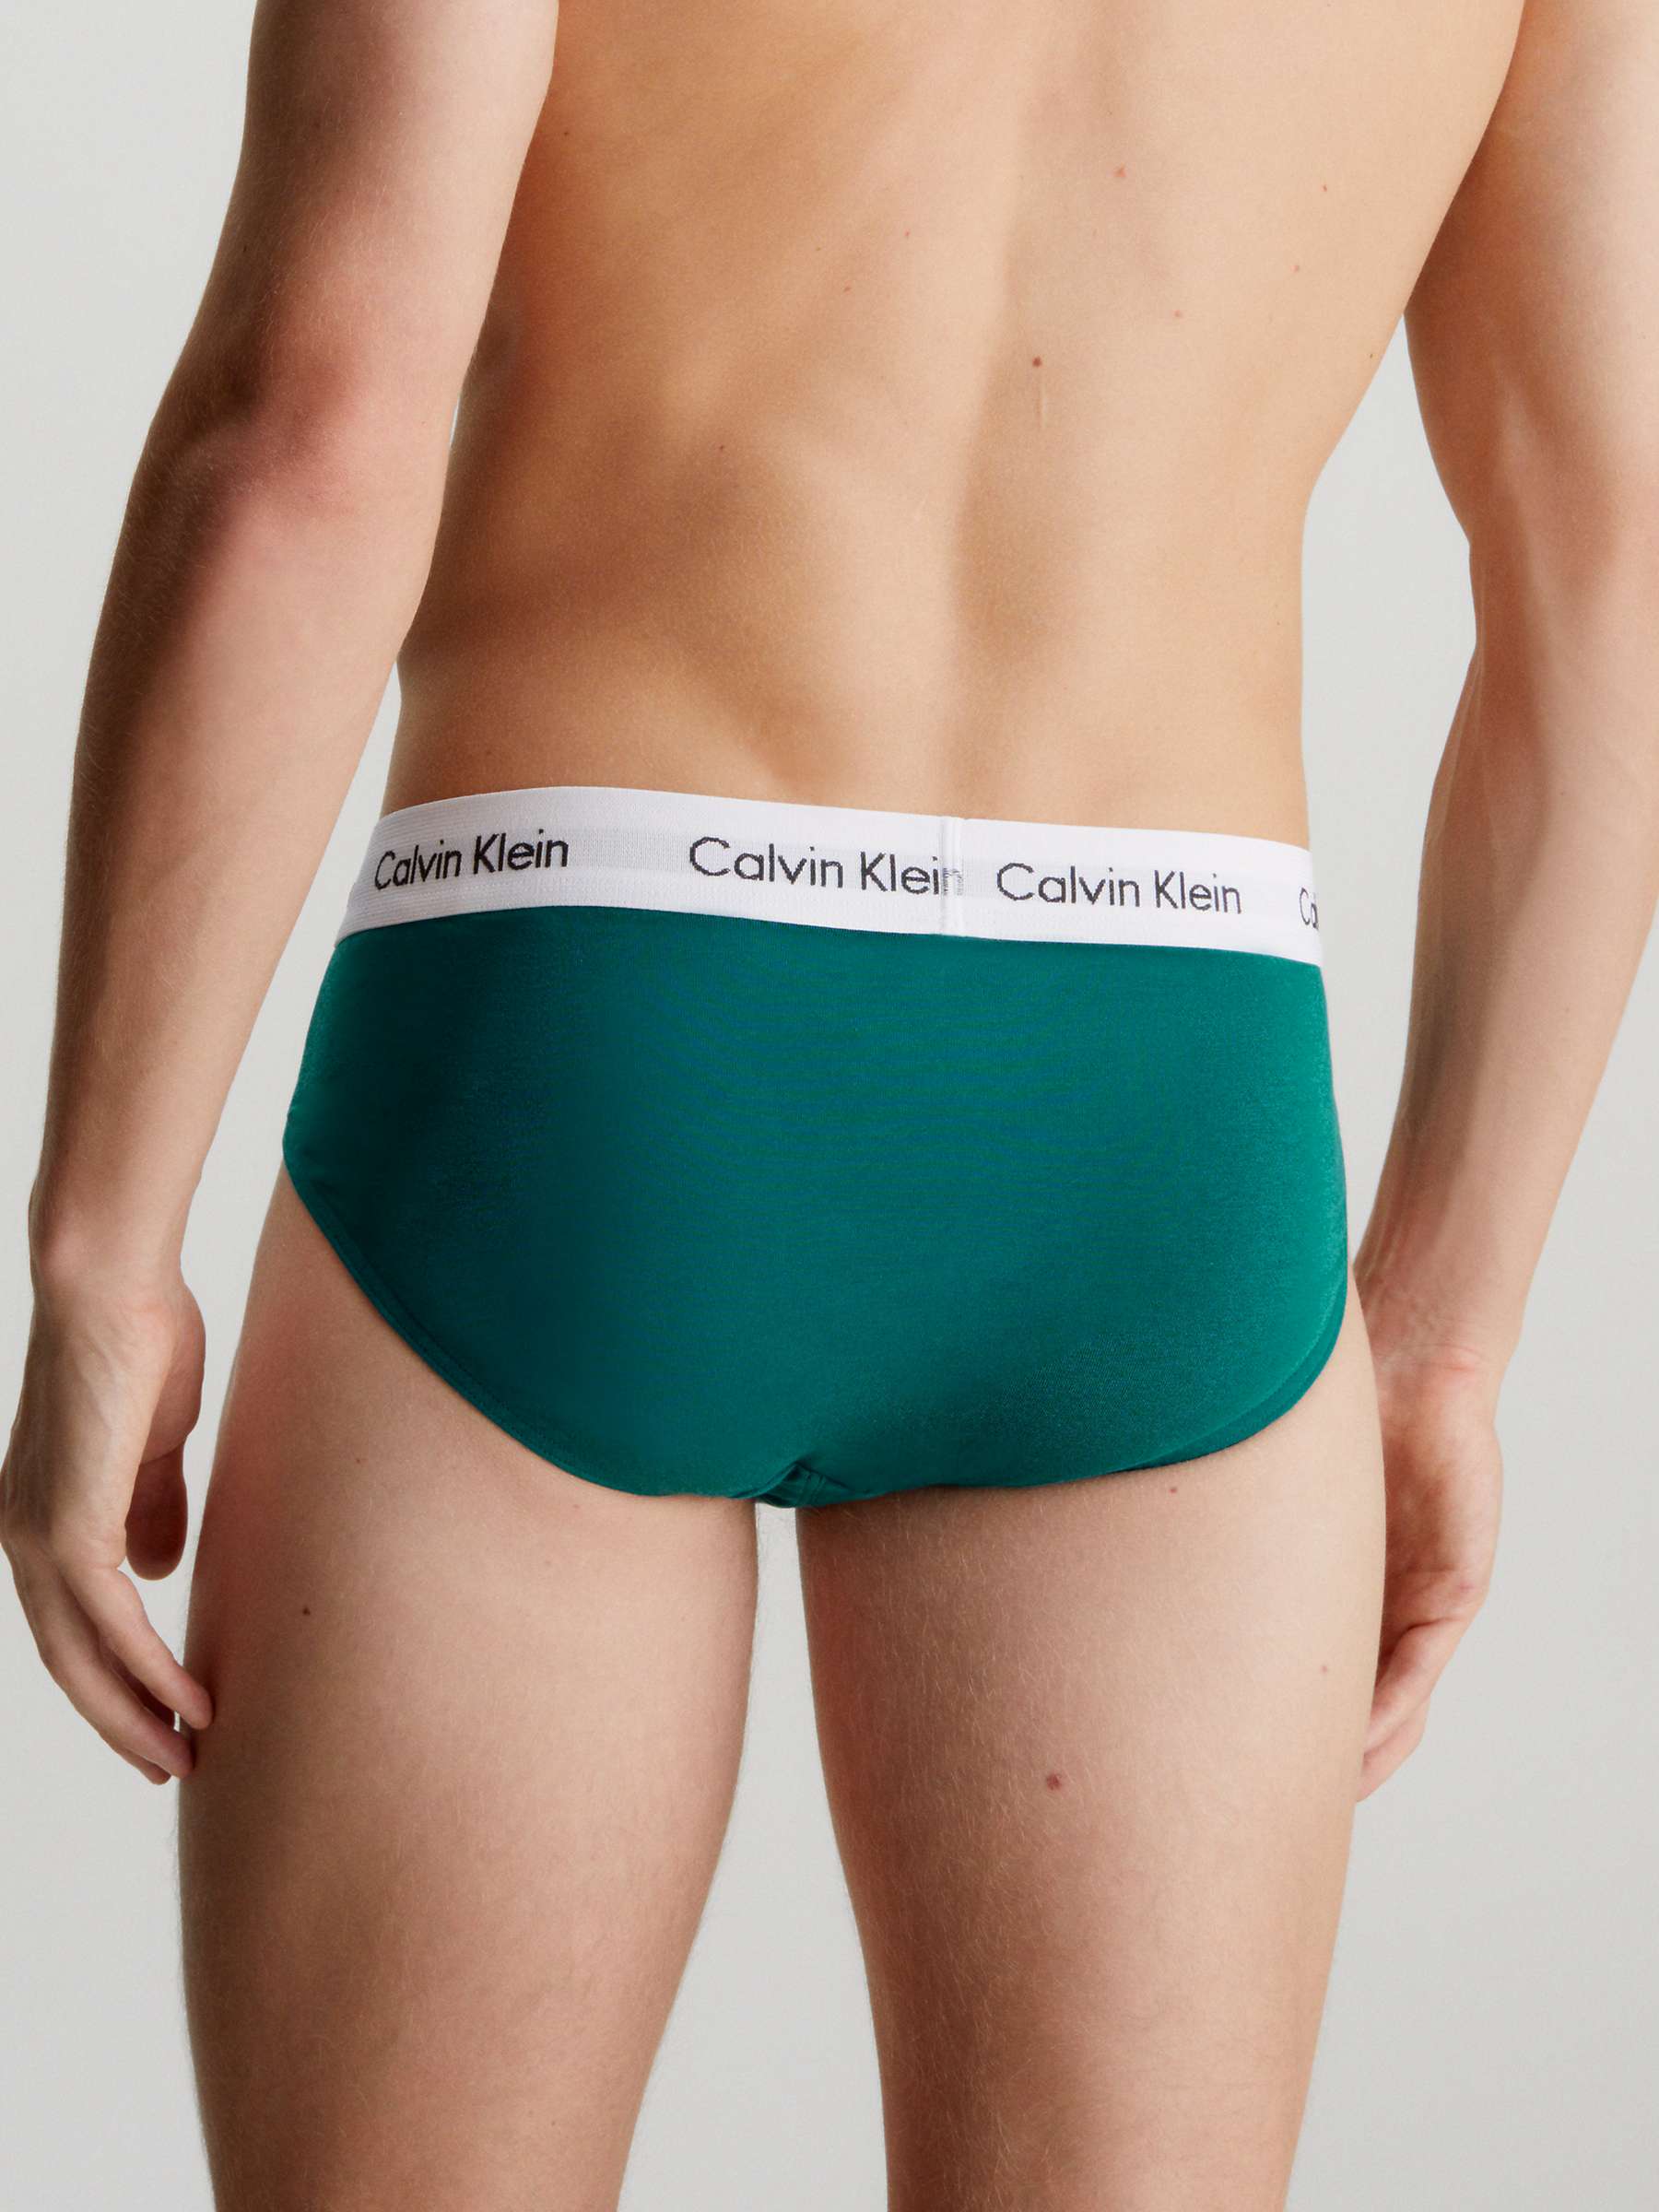 Buy Calvin Klein Cotton Stretch Hip Briefs, Pack of 3, Grey/Chesapeake/Jewel Online at johnlewis.com